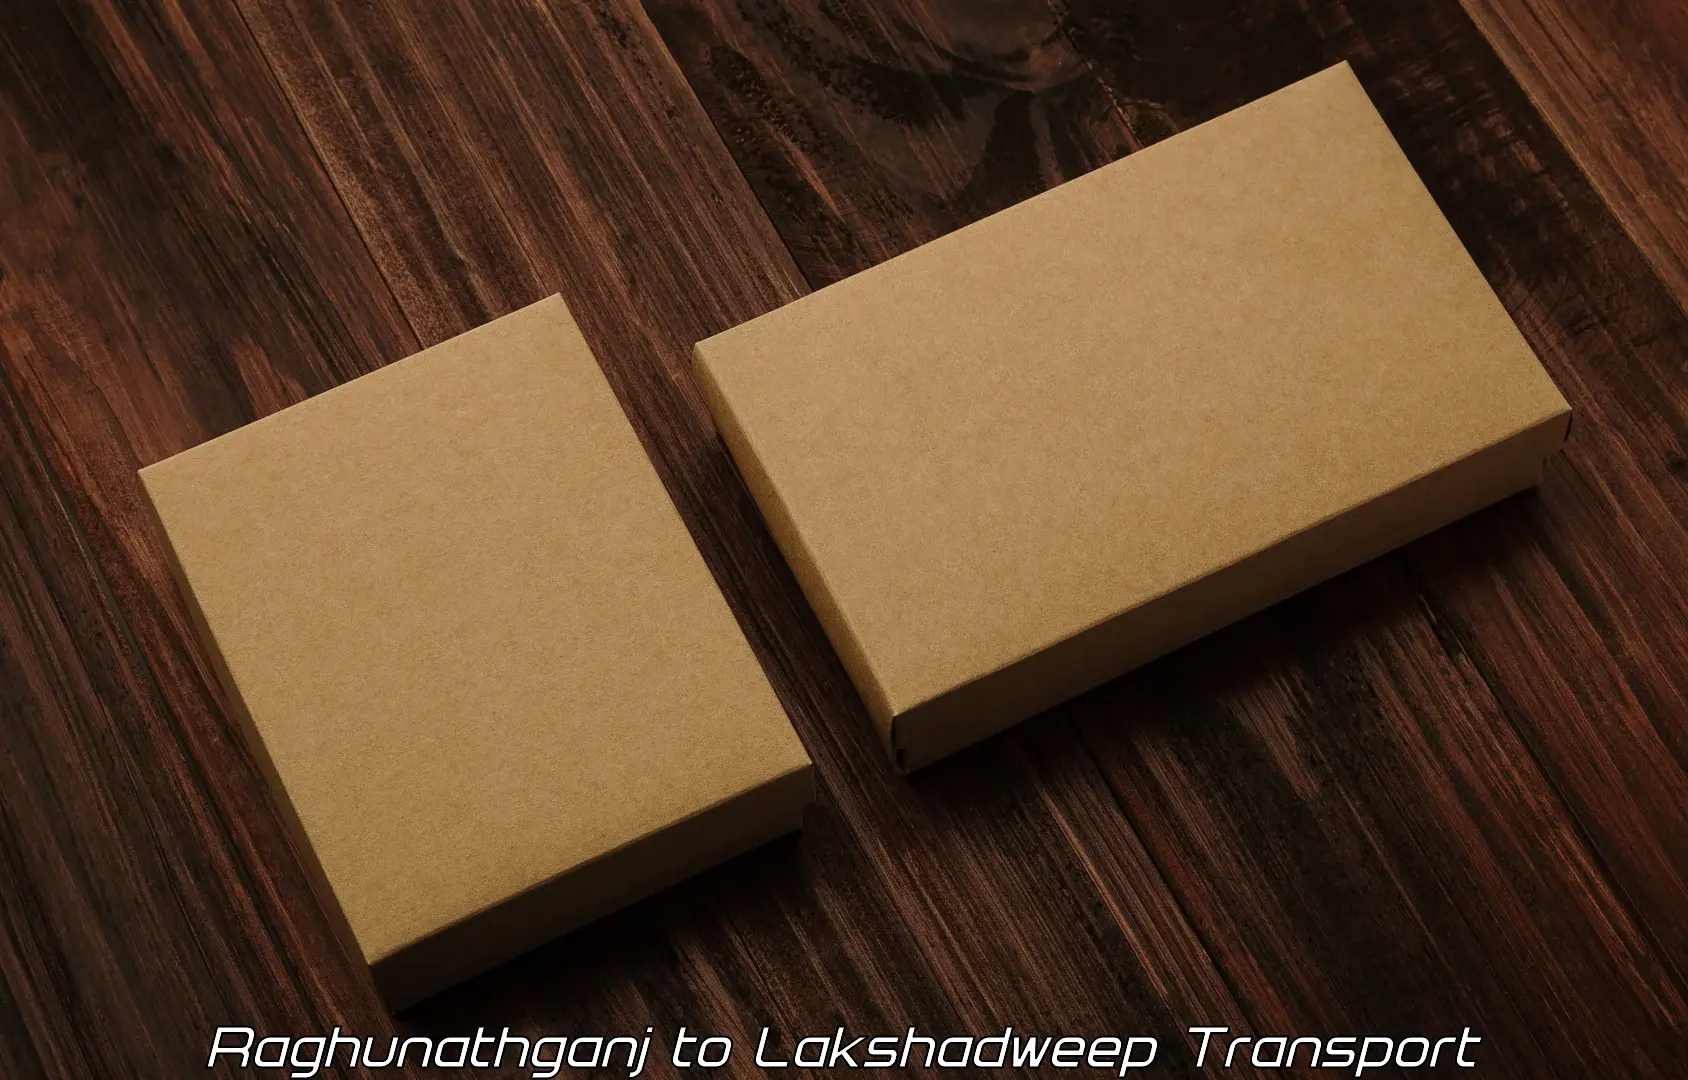 Shipping partner Raghunathganj to Lakshadweep